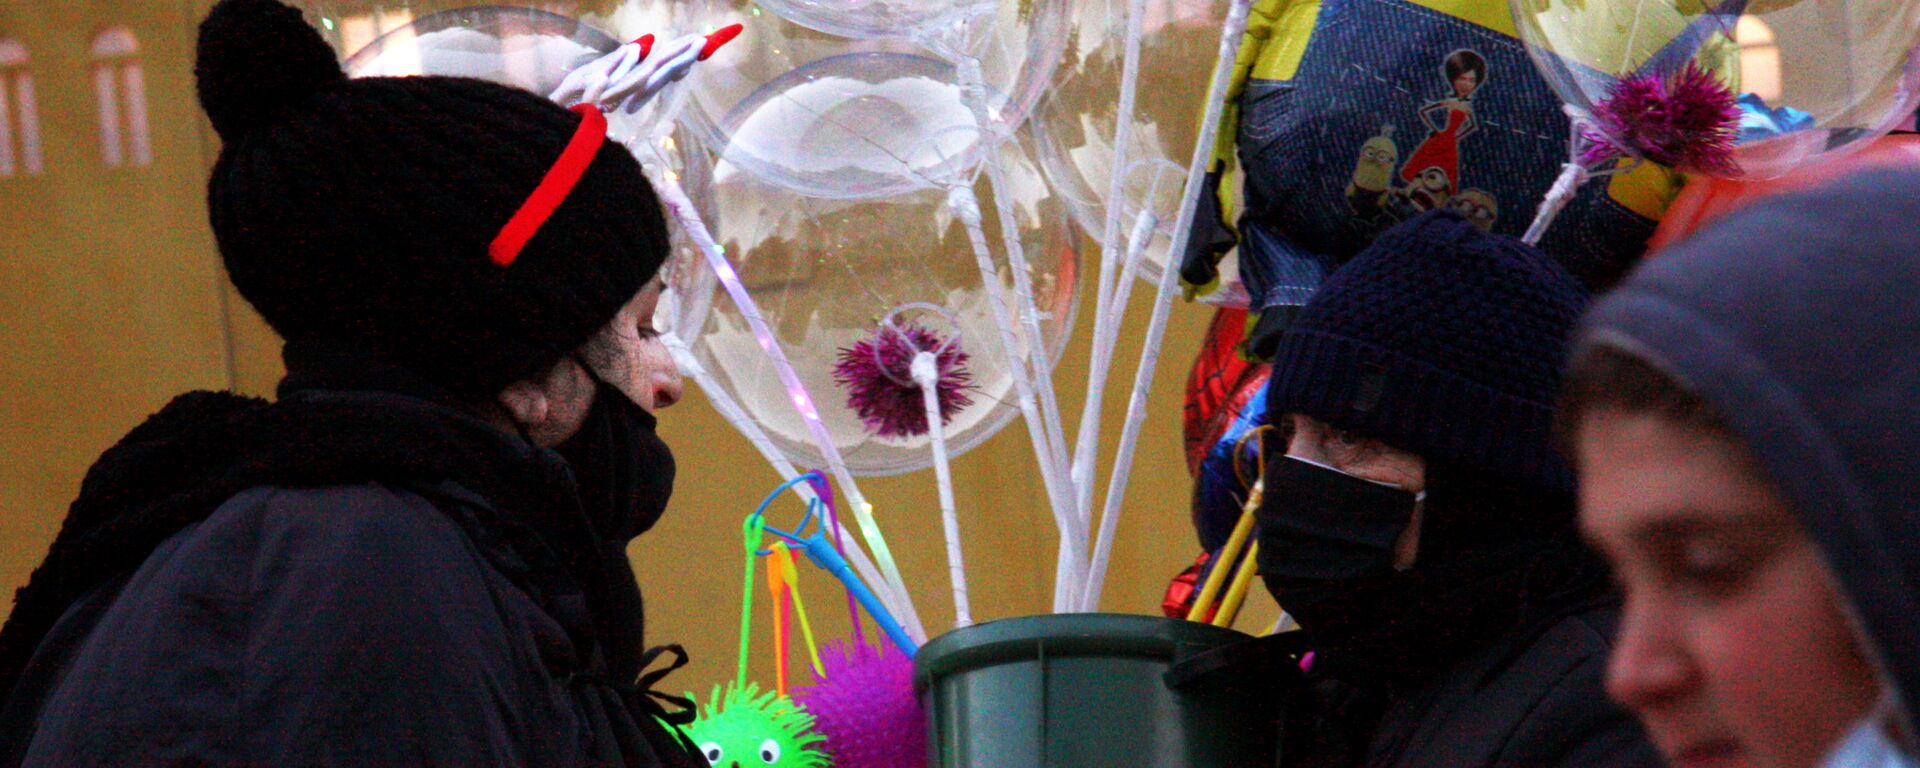 Тбилисцы и Старый Новый год -  продавец воздушных шаров - Sputnik Грузия, 1920, 08.01.2021